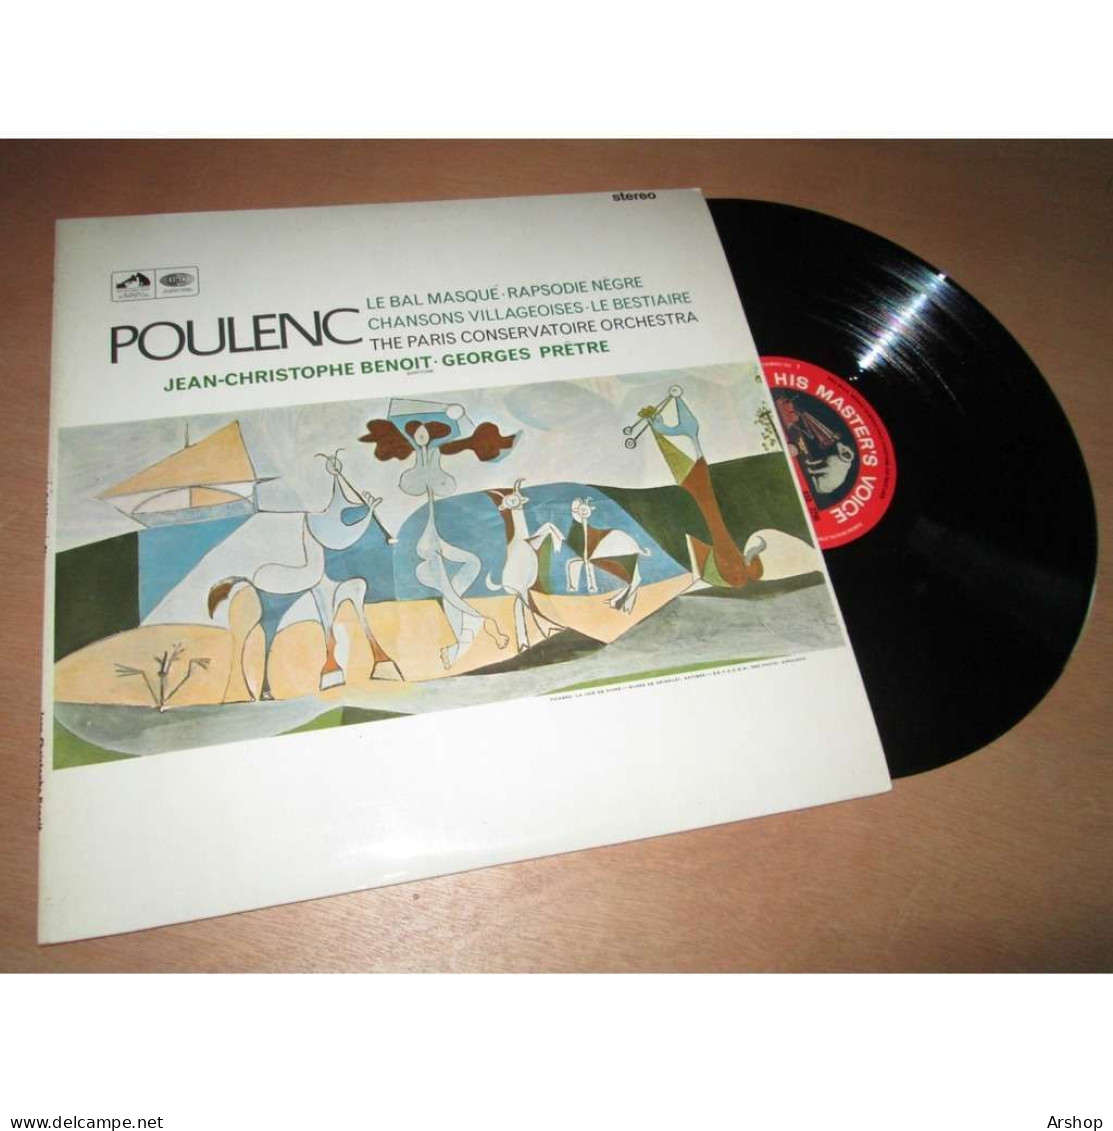 GEORGES PRETRE Le Bal Masqué - Rapsodie Negre - Le Bestiaire & POULENC - His Master Voice ASD 2296 UK Lp 1966 - Classical